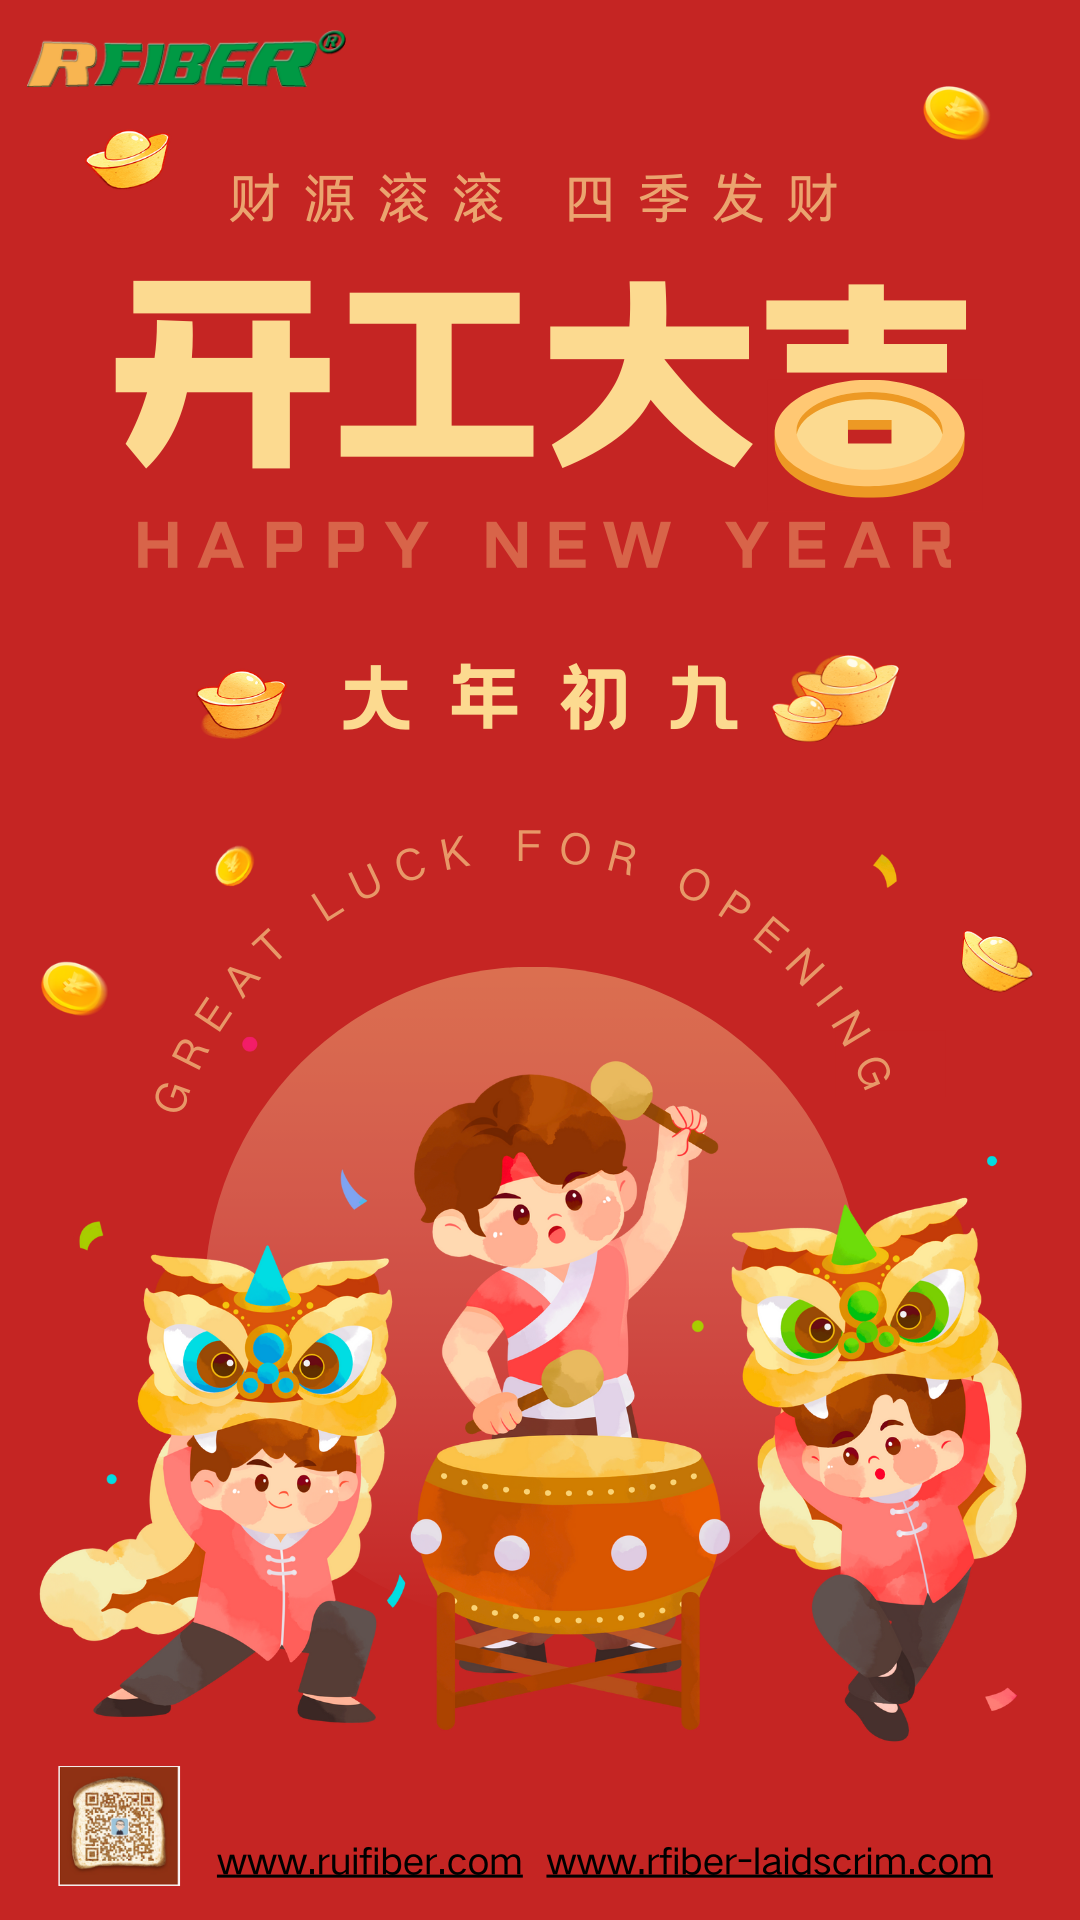 Shanghai Ruifiber retoma operações após a celebração do Ano Novo Chinês